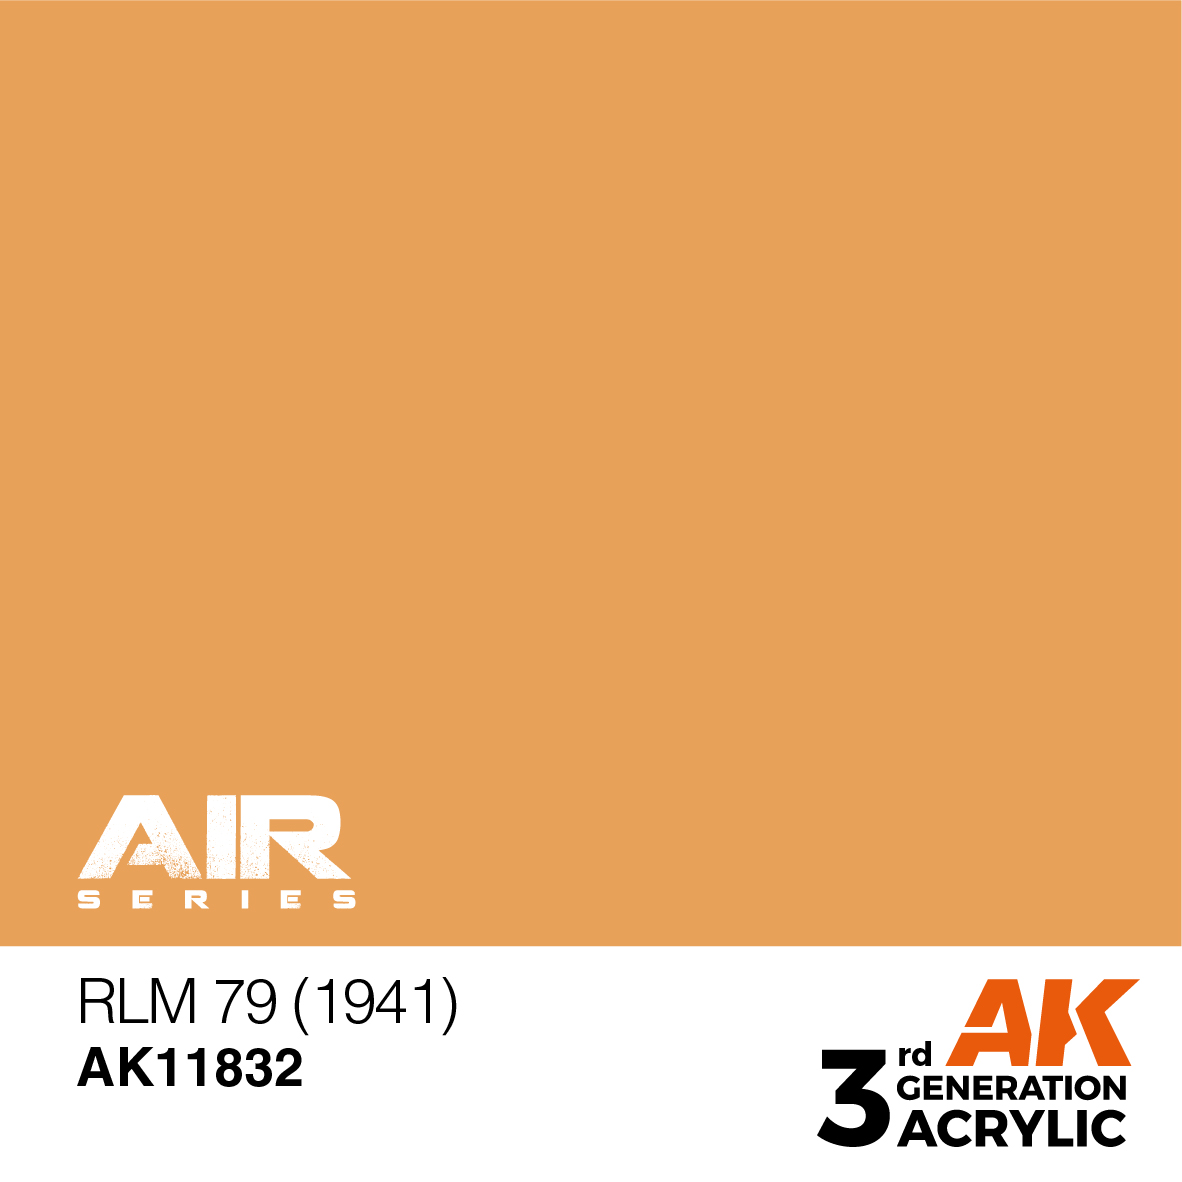 RLM 79 (1941) – AIR